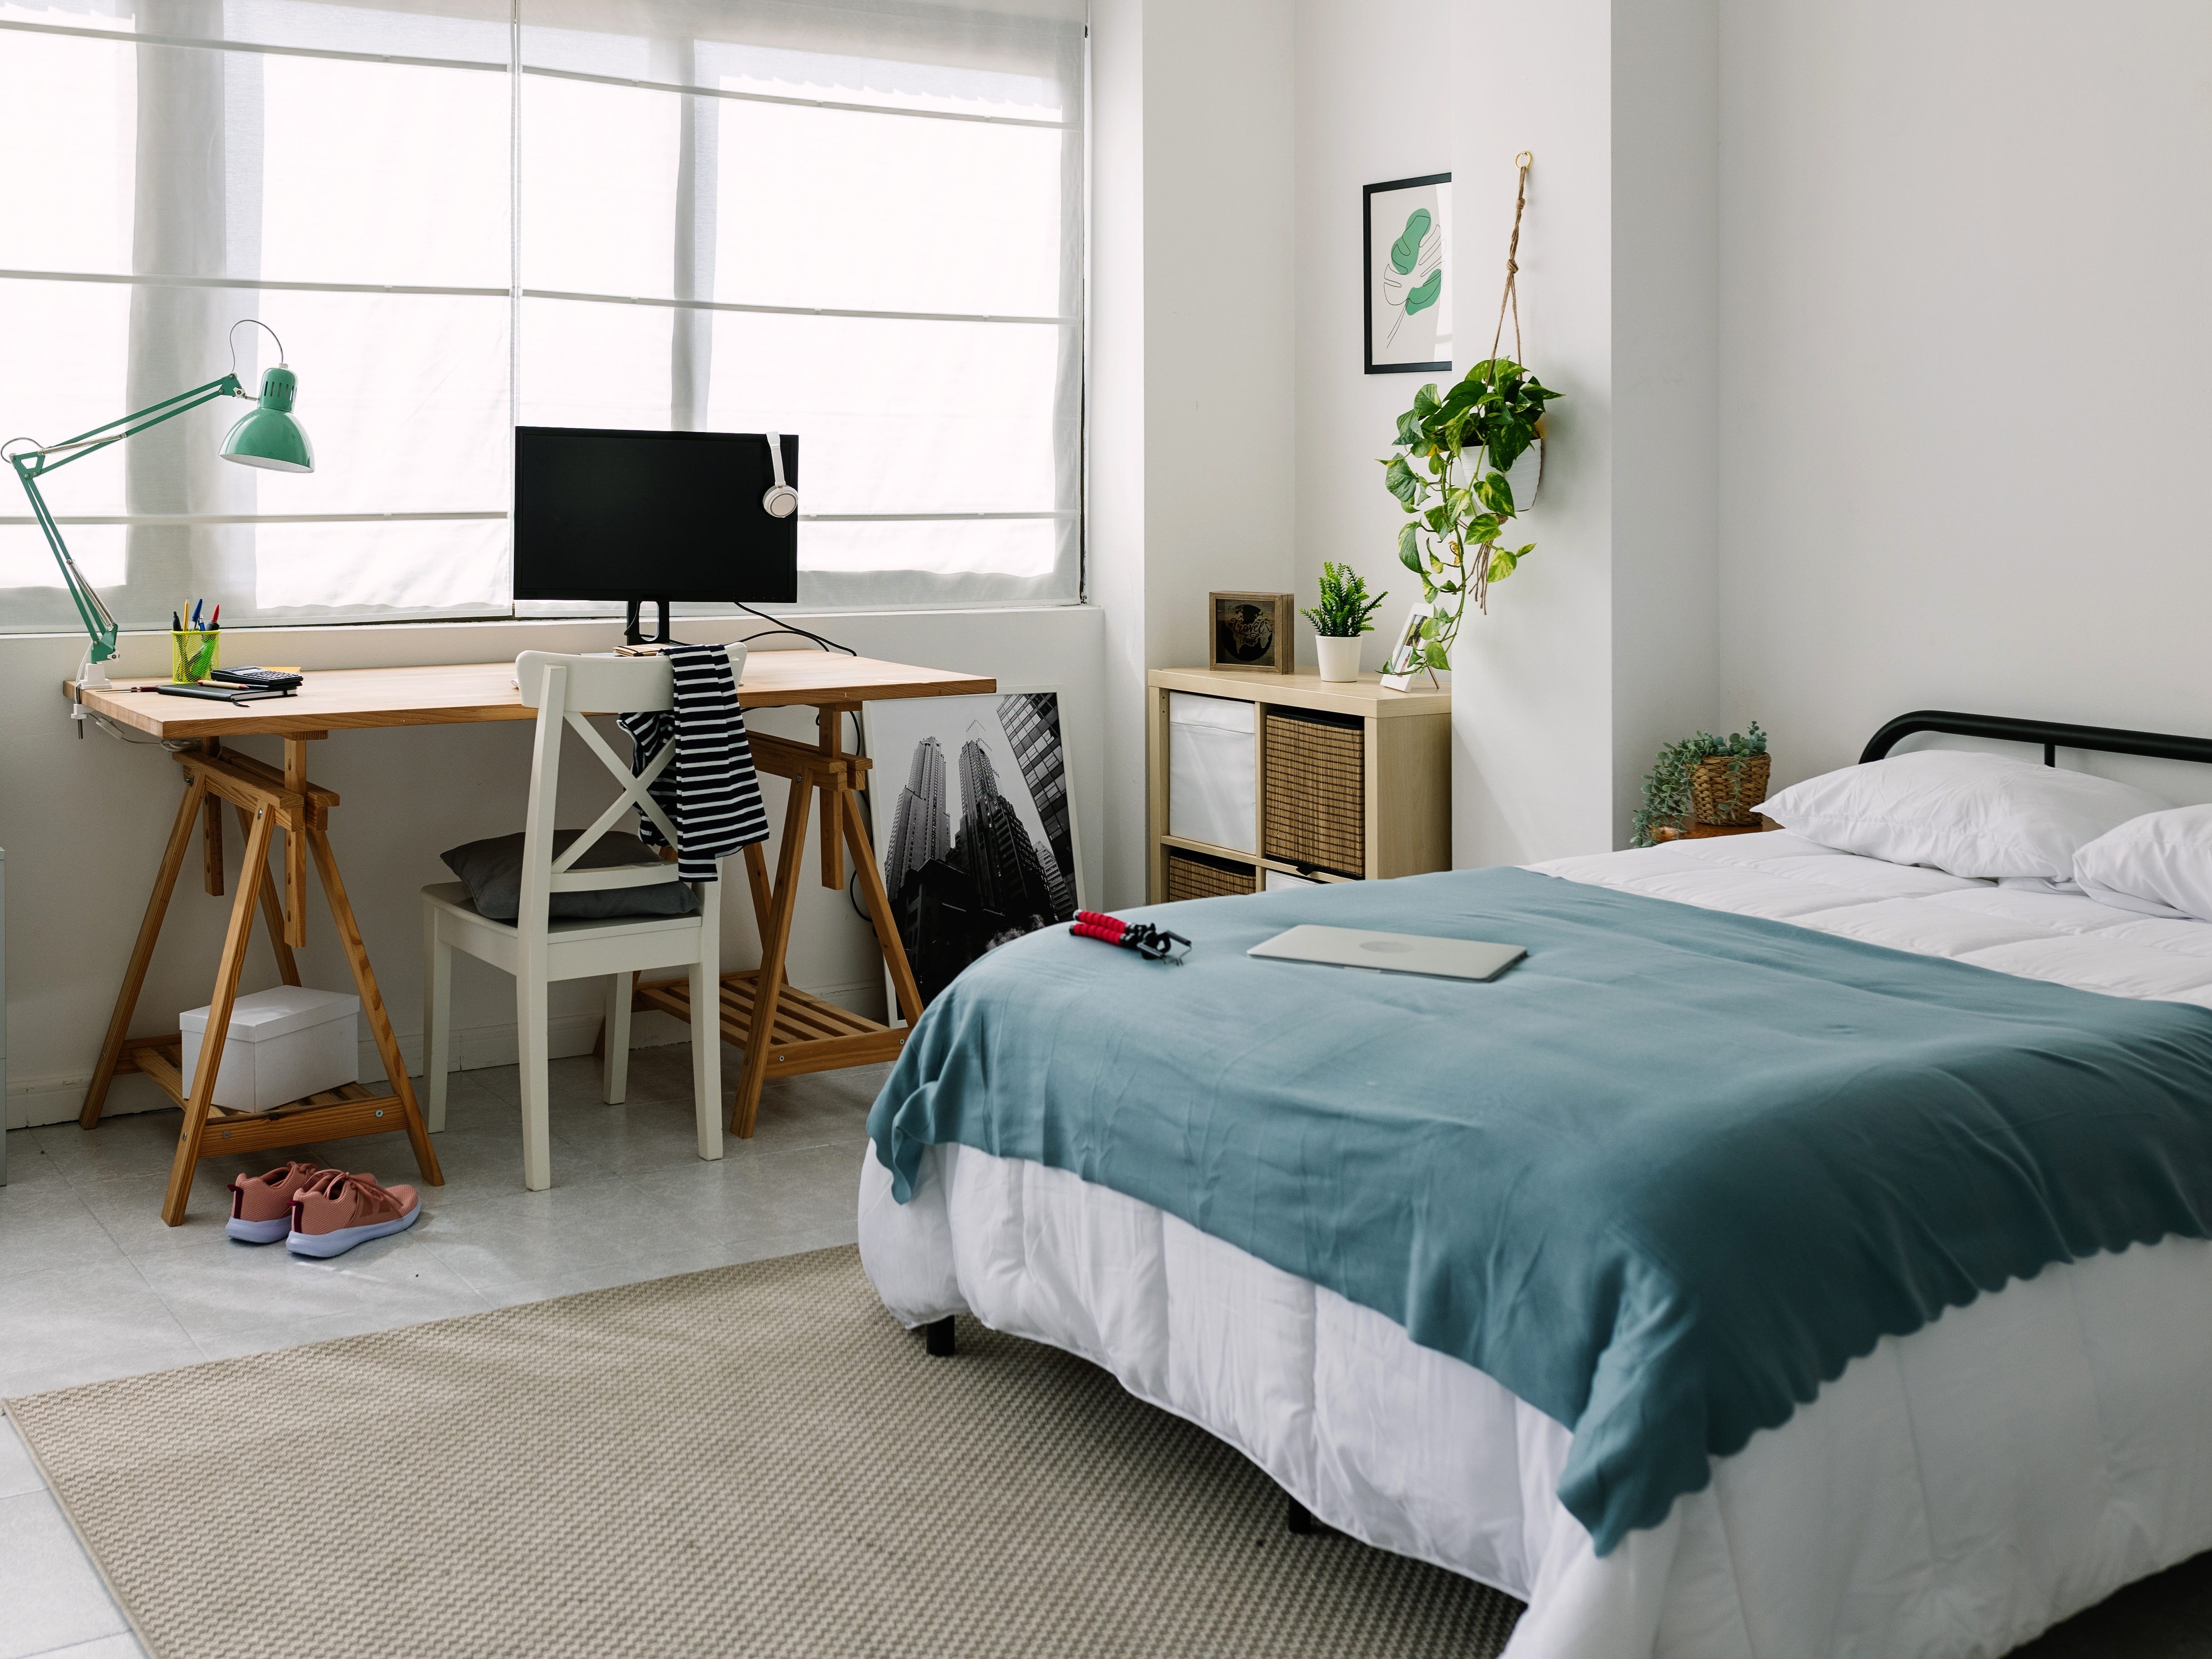 Sauberes, modernes Schlafzimmer mit Schreibtisch und Bett sowie blau-weißen Designdetails